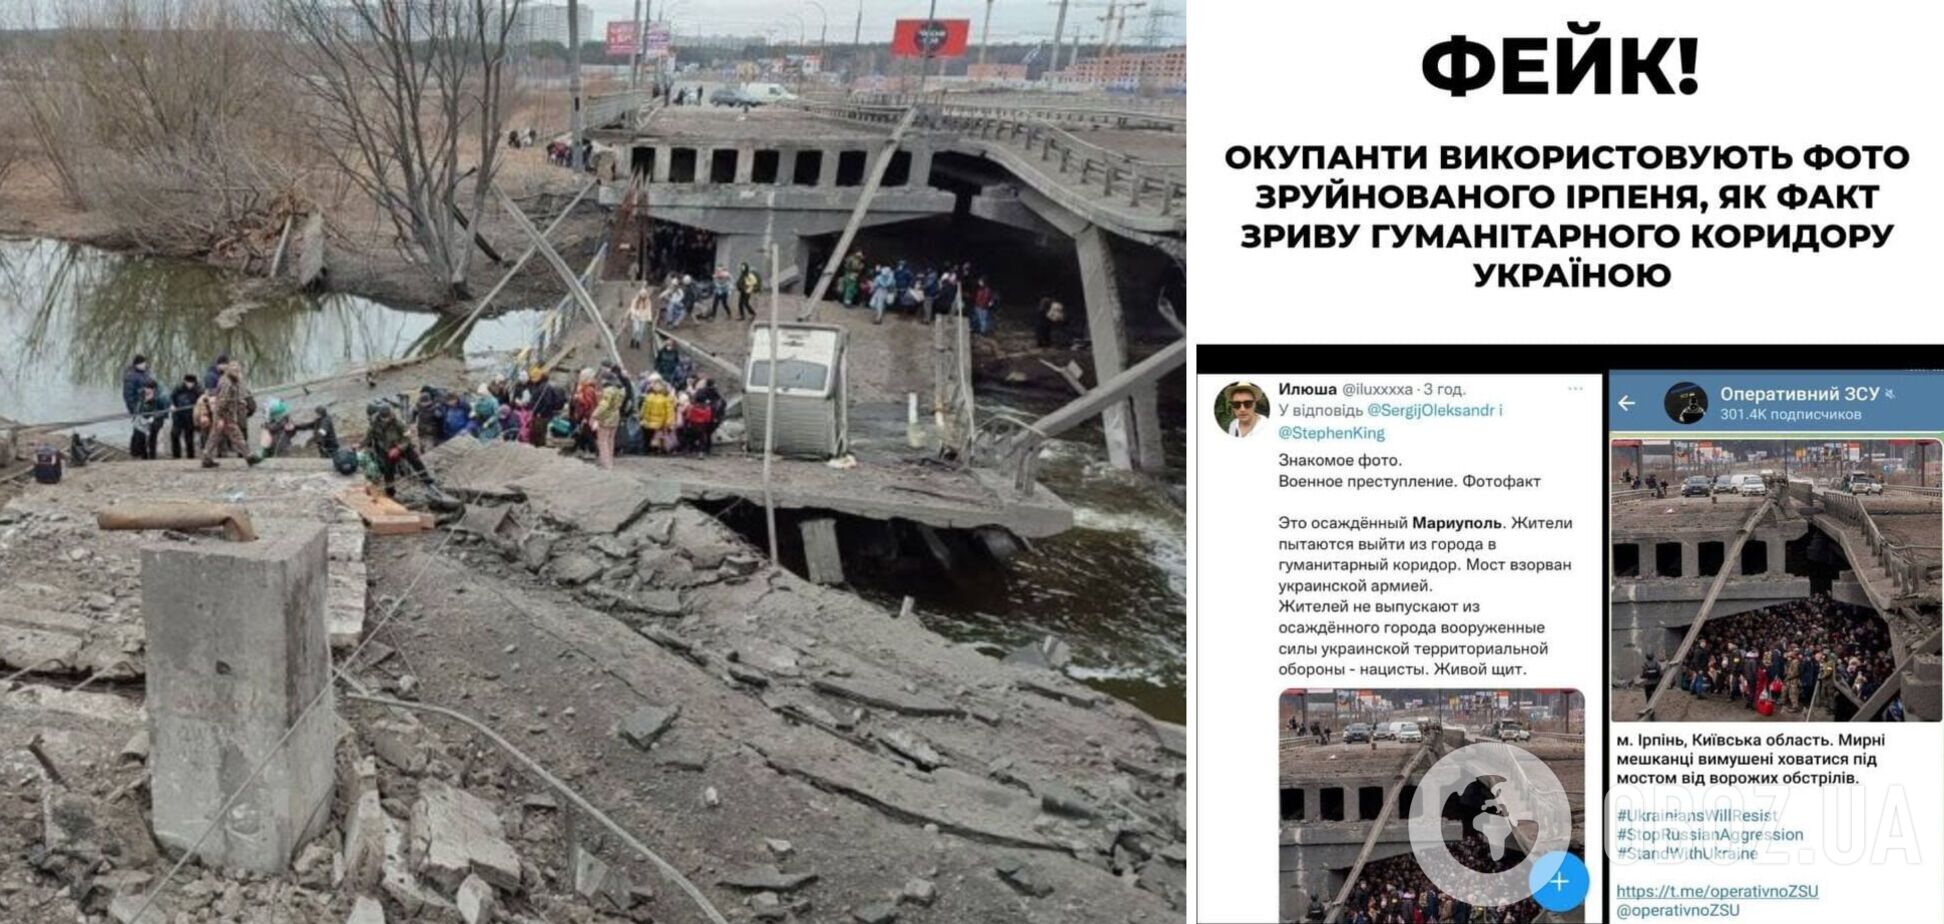 У РФ запустили черговий фейк: Україну звинуватили у зриві евакуації у Маріуполі, показавши підірваний в Ірпені міст